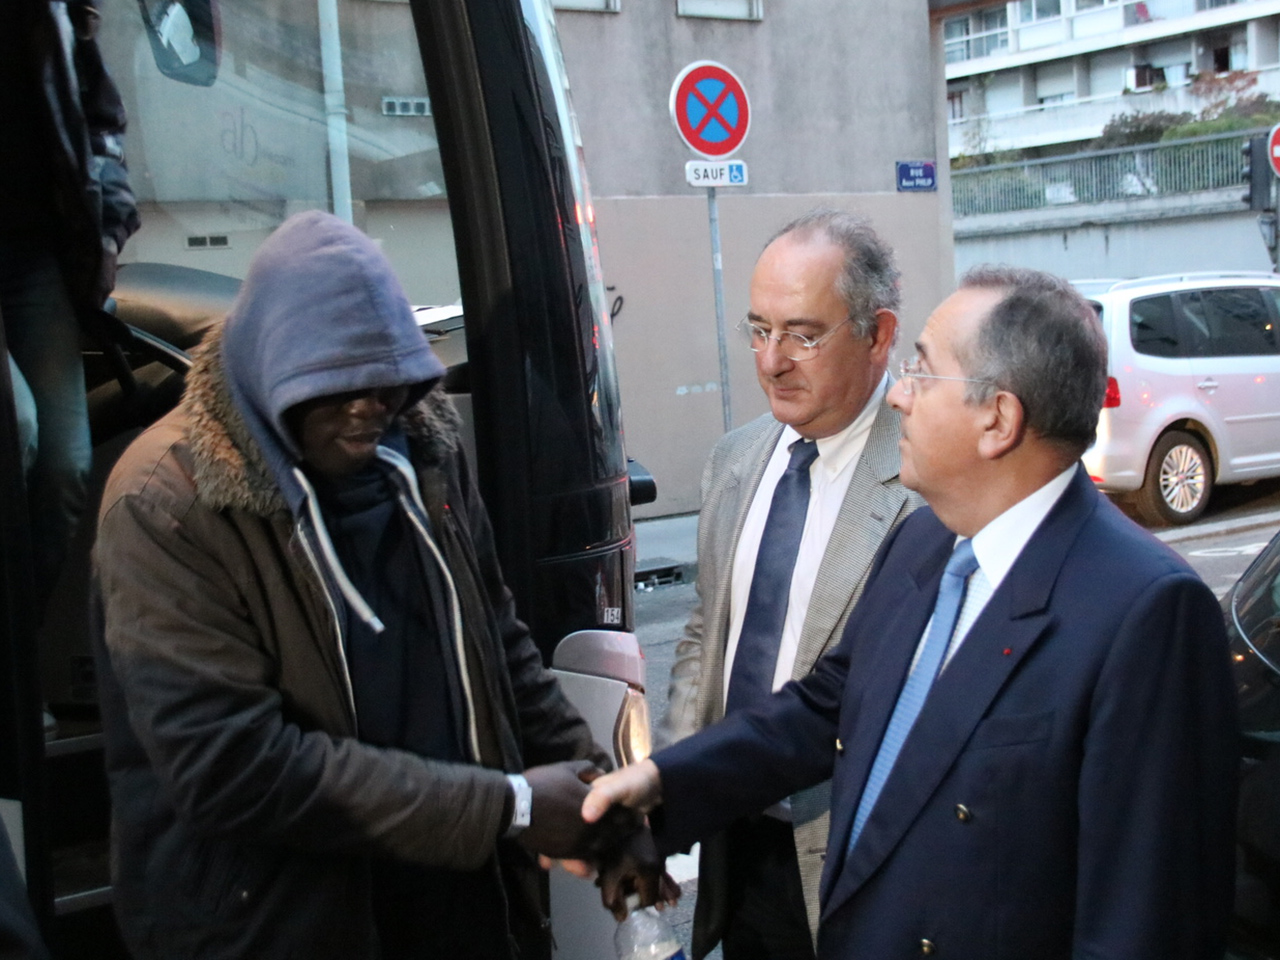 Les migrants étaient accueillis par le préfet du Rhône - LyonMag